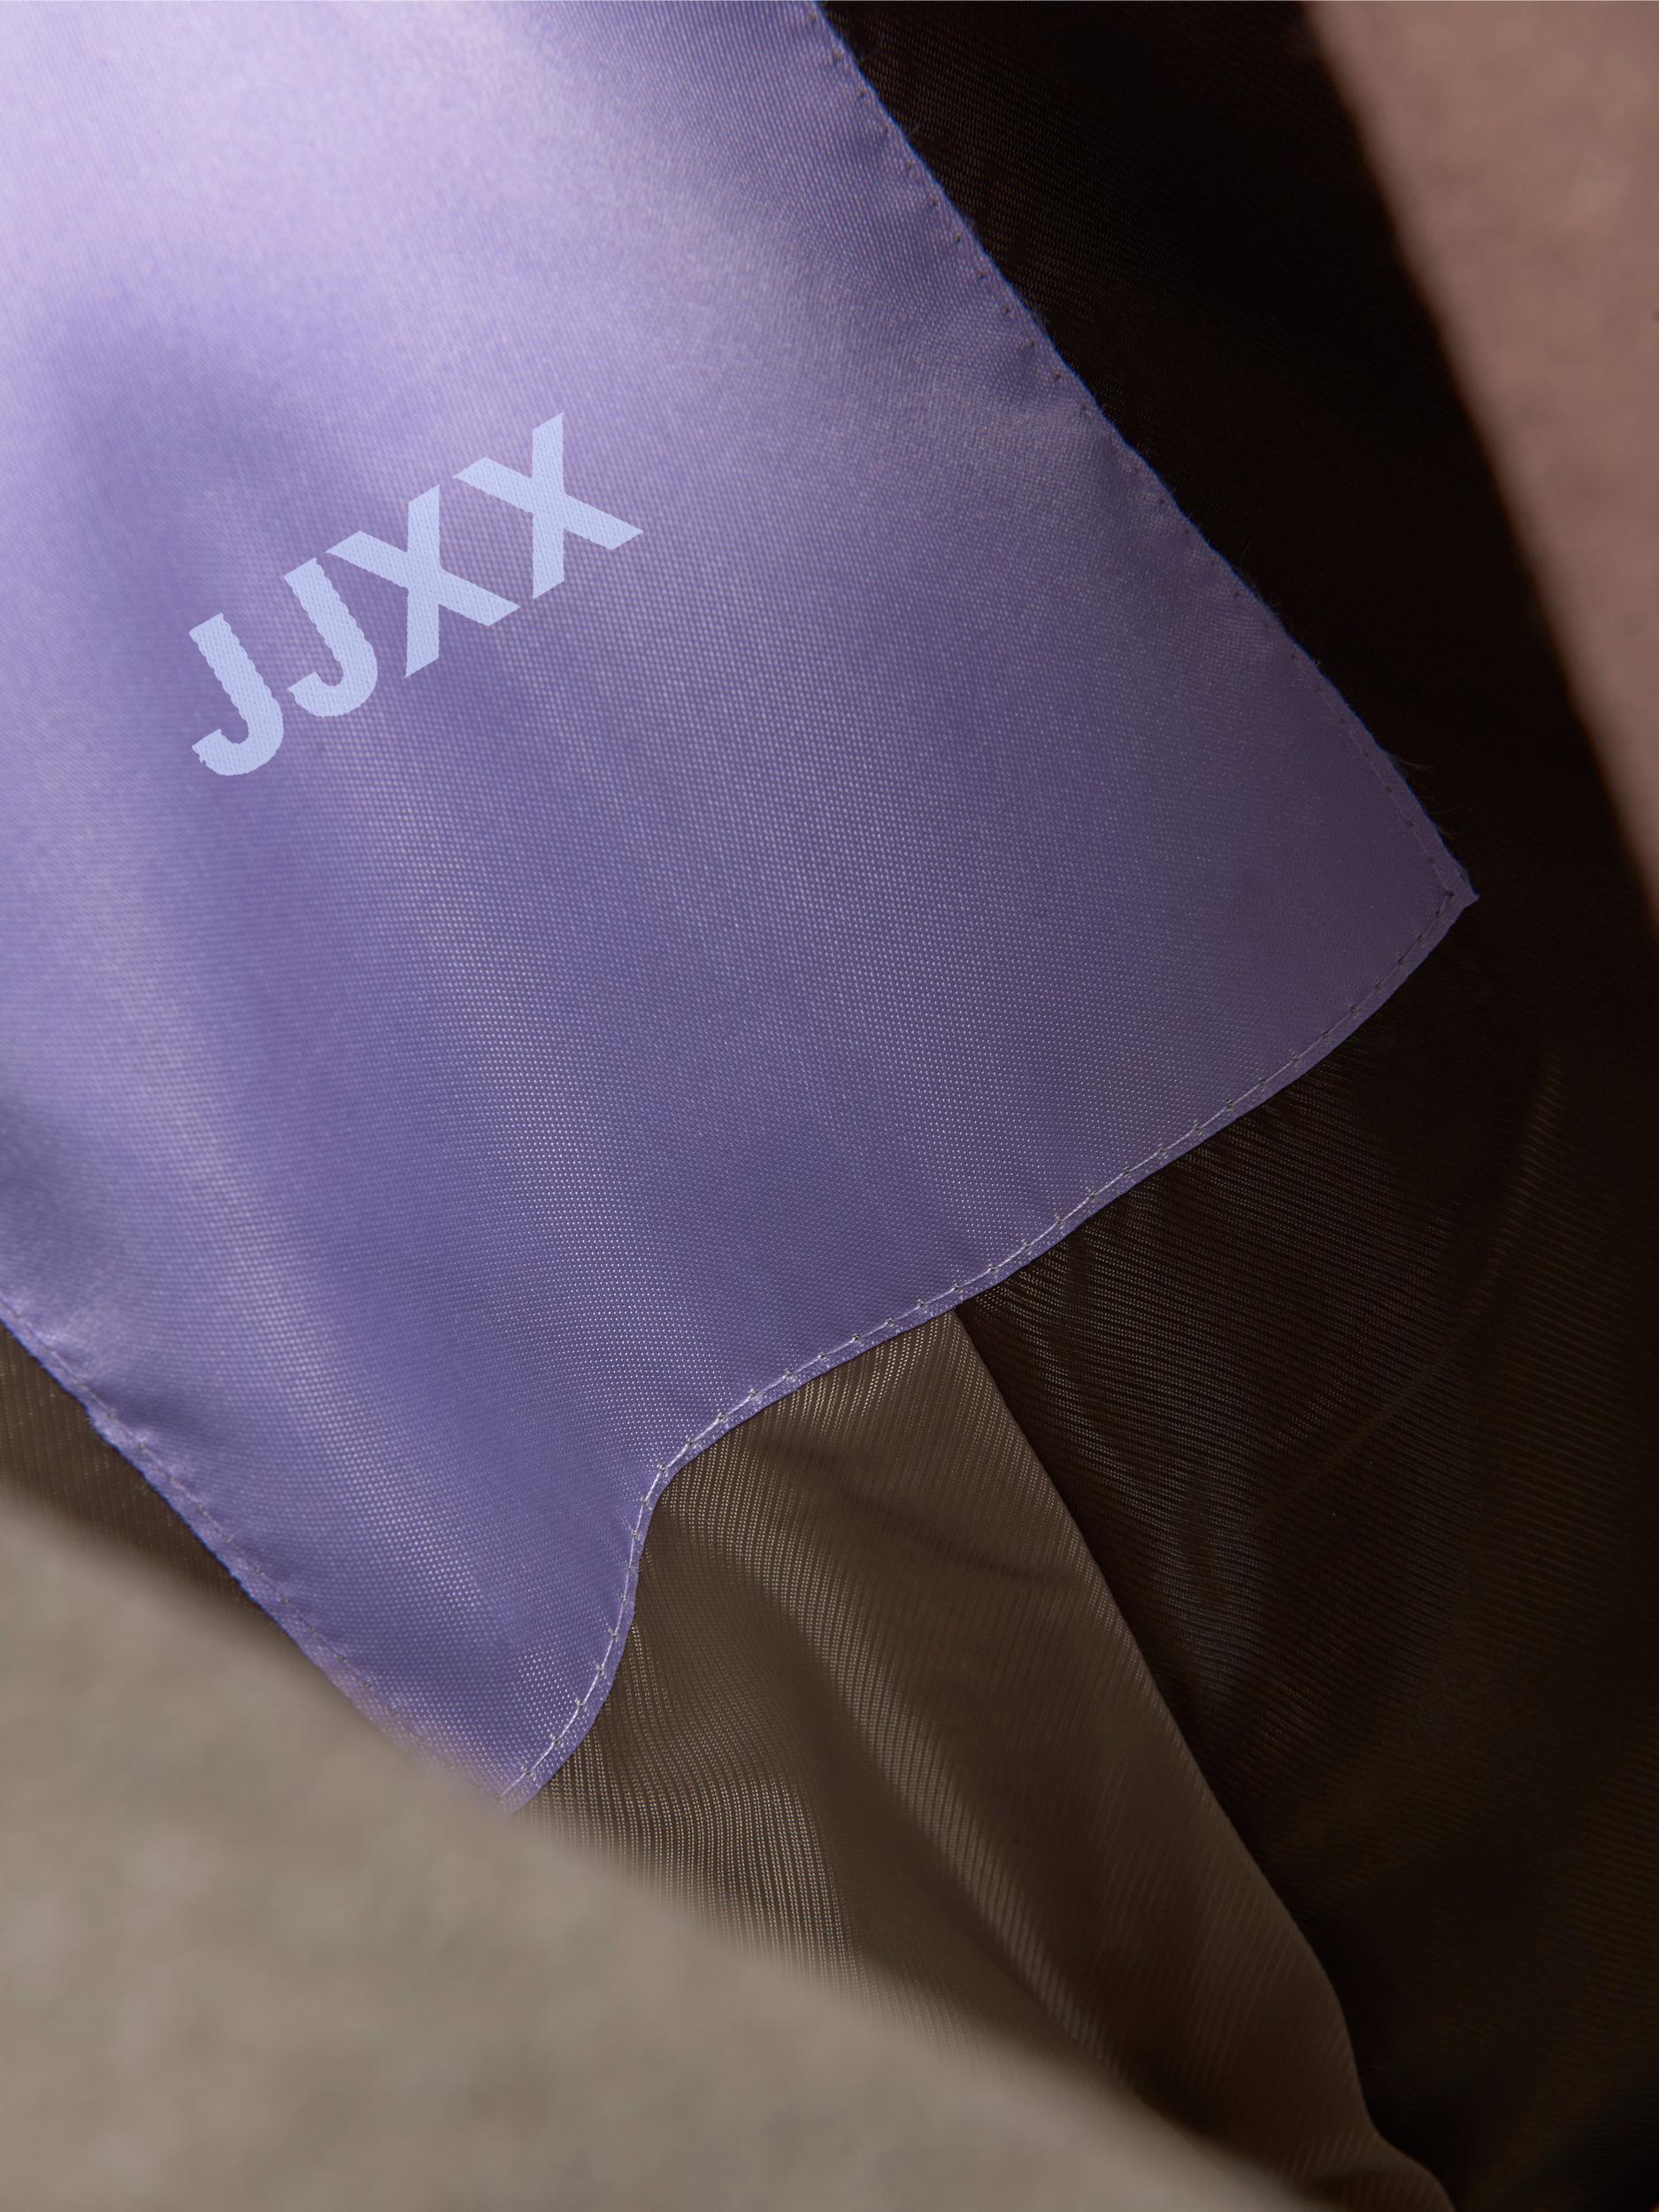 JJXX Mantel Maden in Dunkelbraun, Hellbraun 